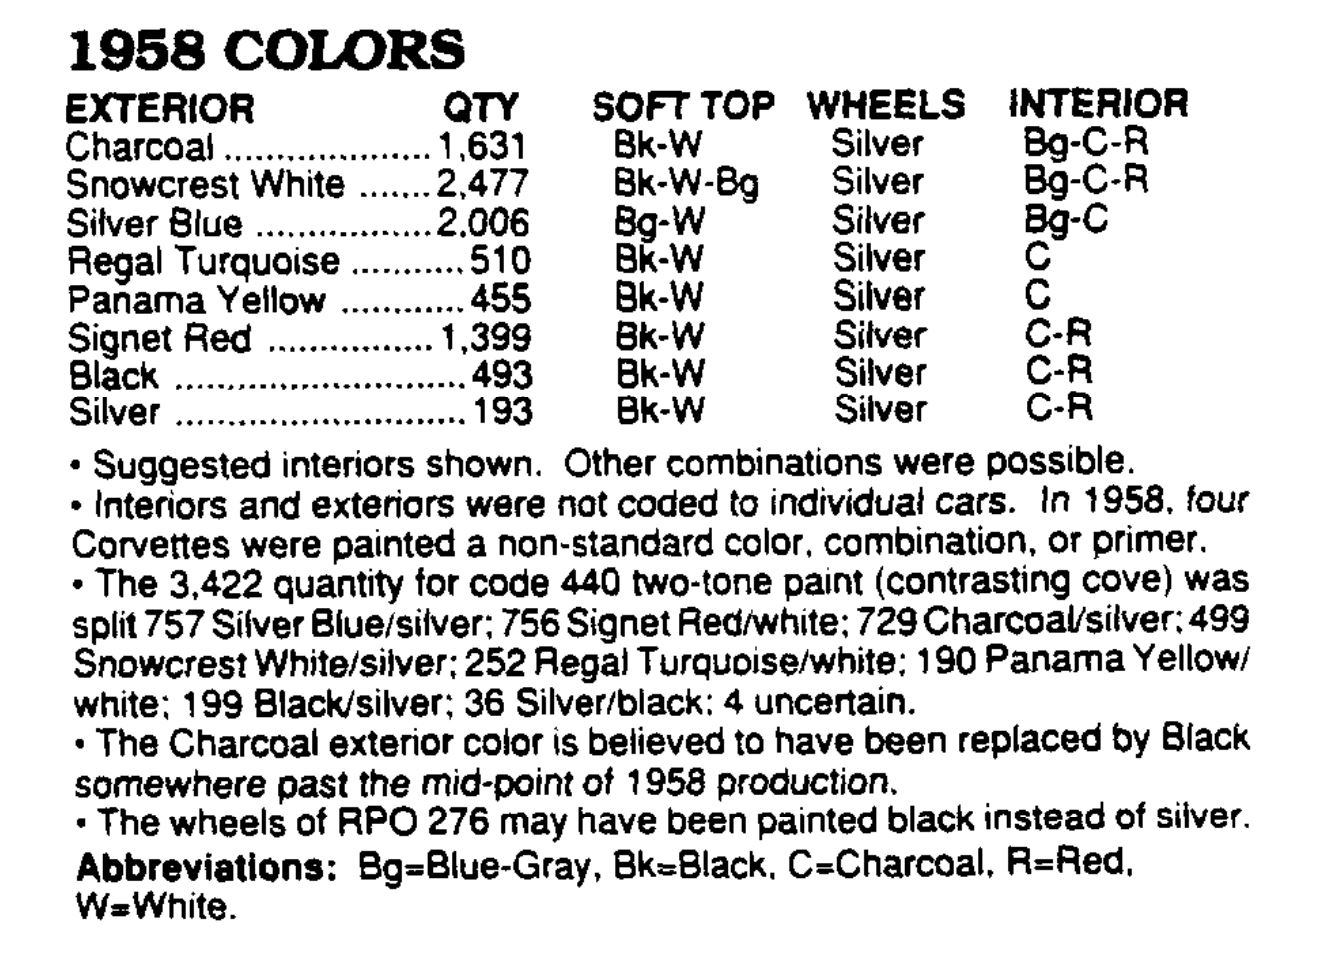 Breakdown of 1959 Corvette Colors sold in 1958